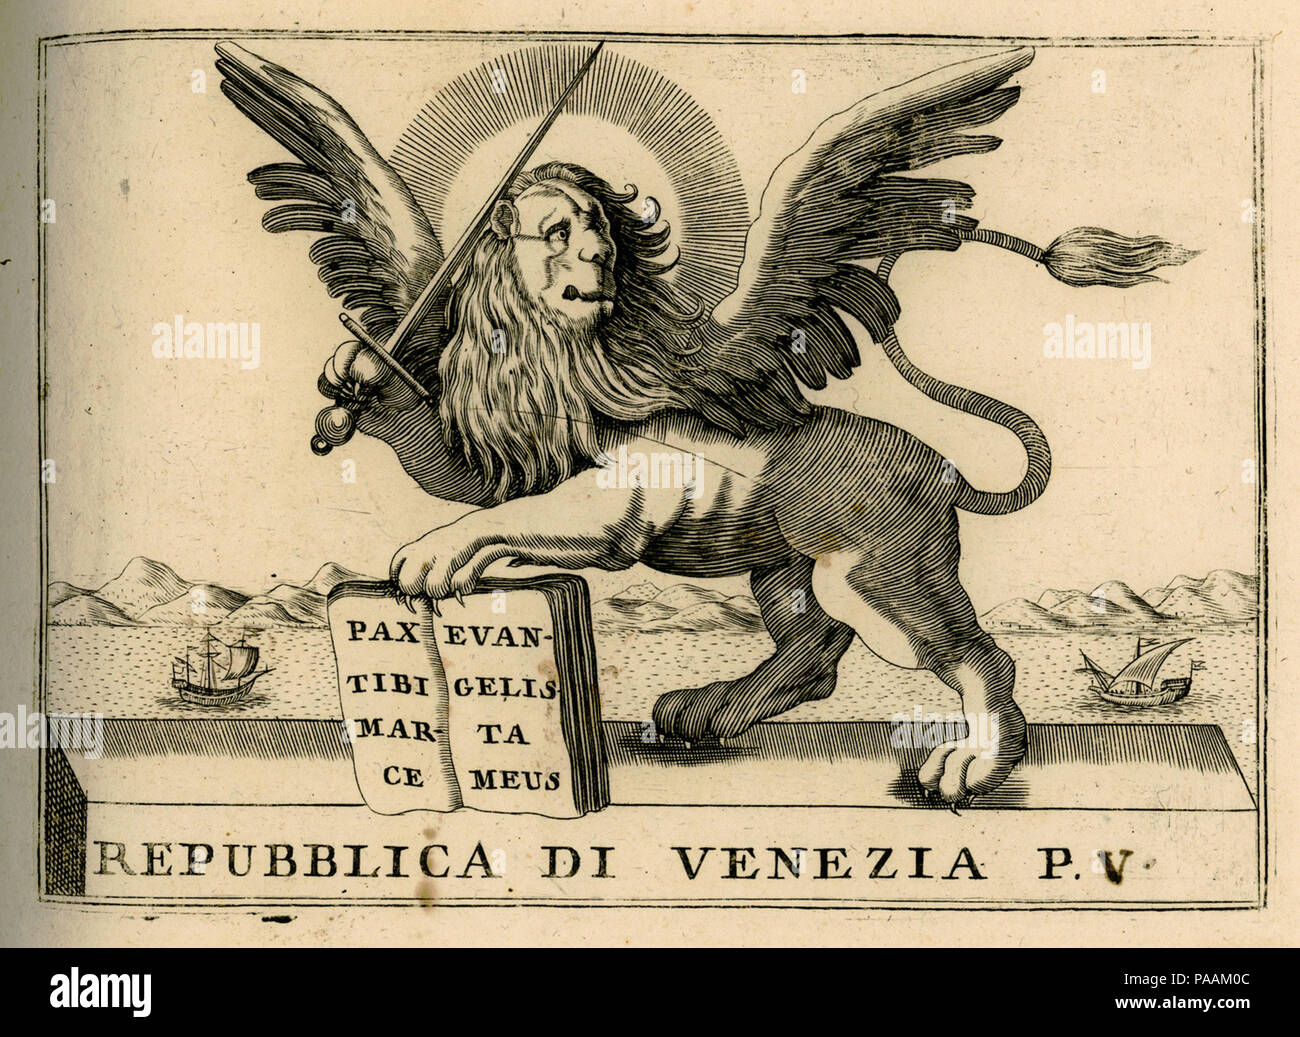 216 Repubblica di Venezia p V - Coronelli Vincenzo - 1688 Stock Photo